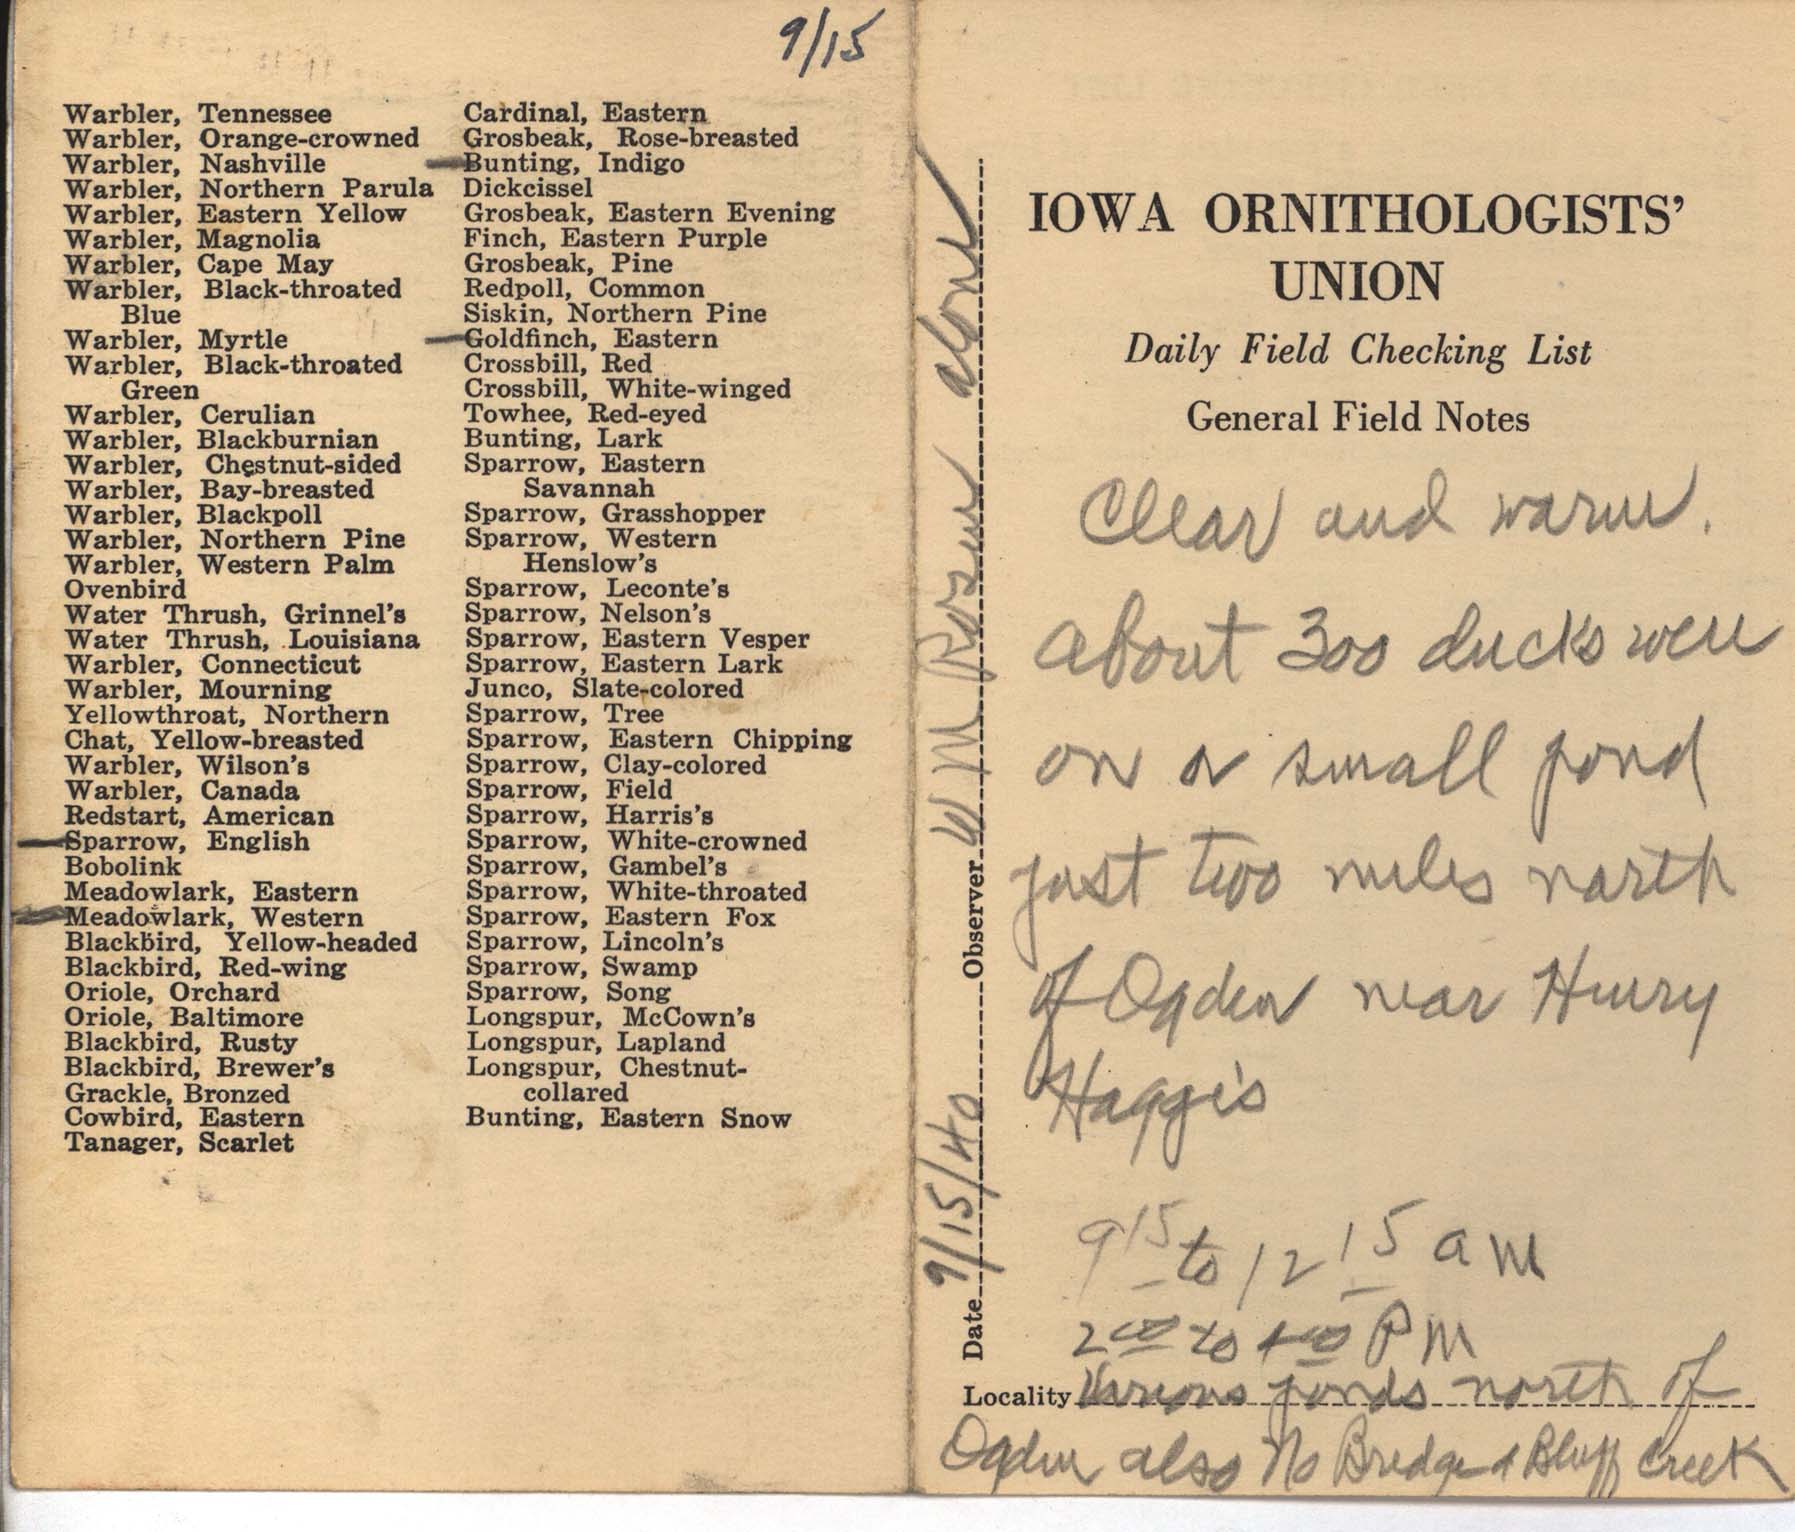 Daily field checking list by Walter Rosene, September 15, 1940